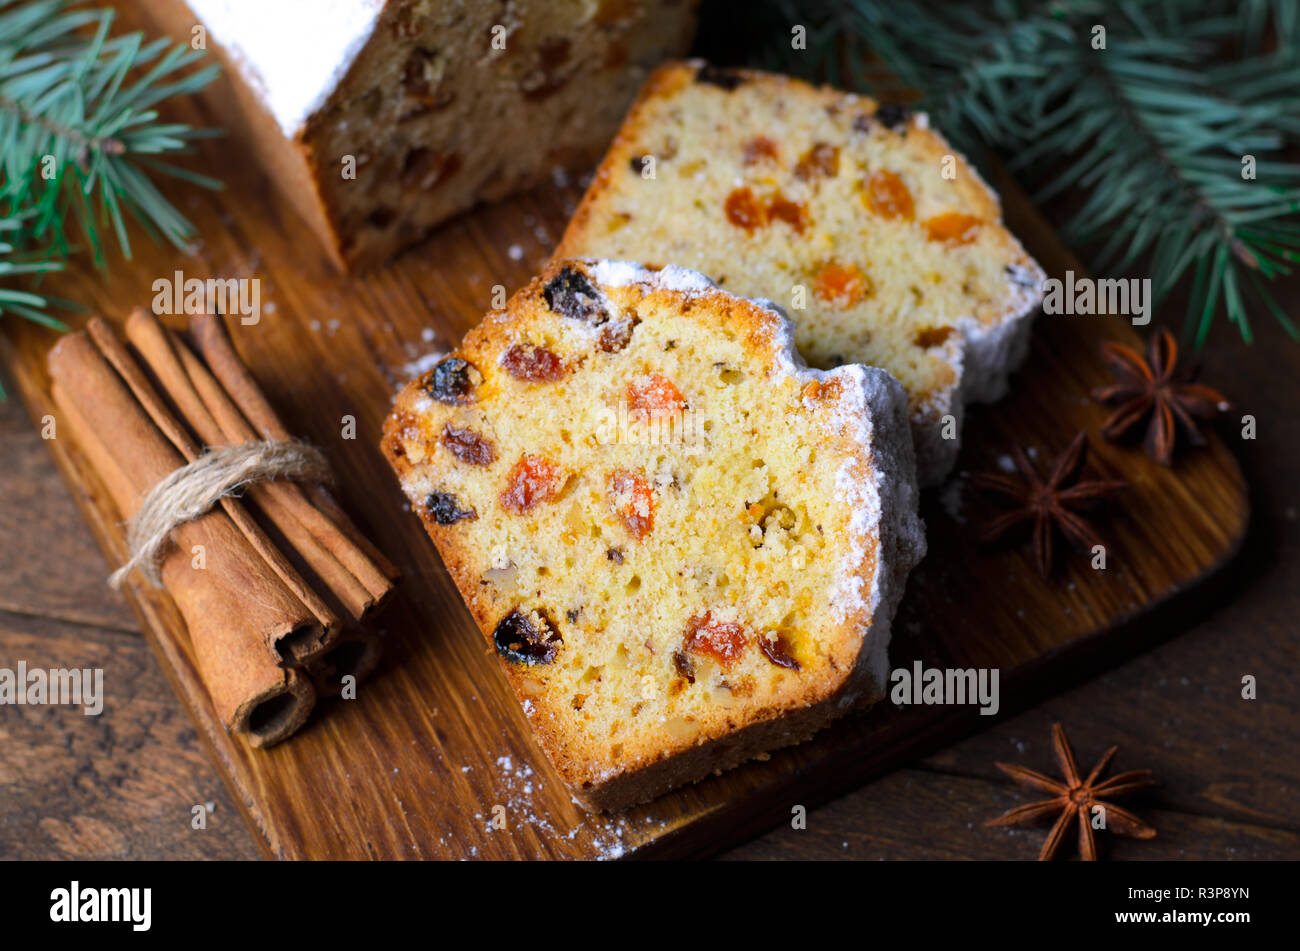 Obst Brot Kuchen mit Puderzucker bestäubt, Weihnachten und Winter Urlaub gönnen, hausgemachte Kuchen mit Rosinen auf hölzernen Hintergrund Stockfoto